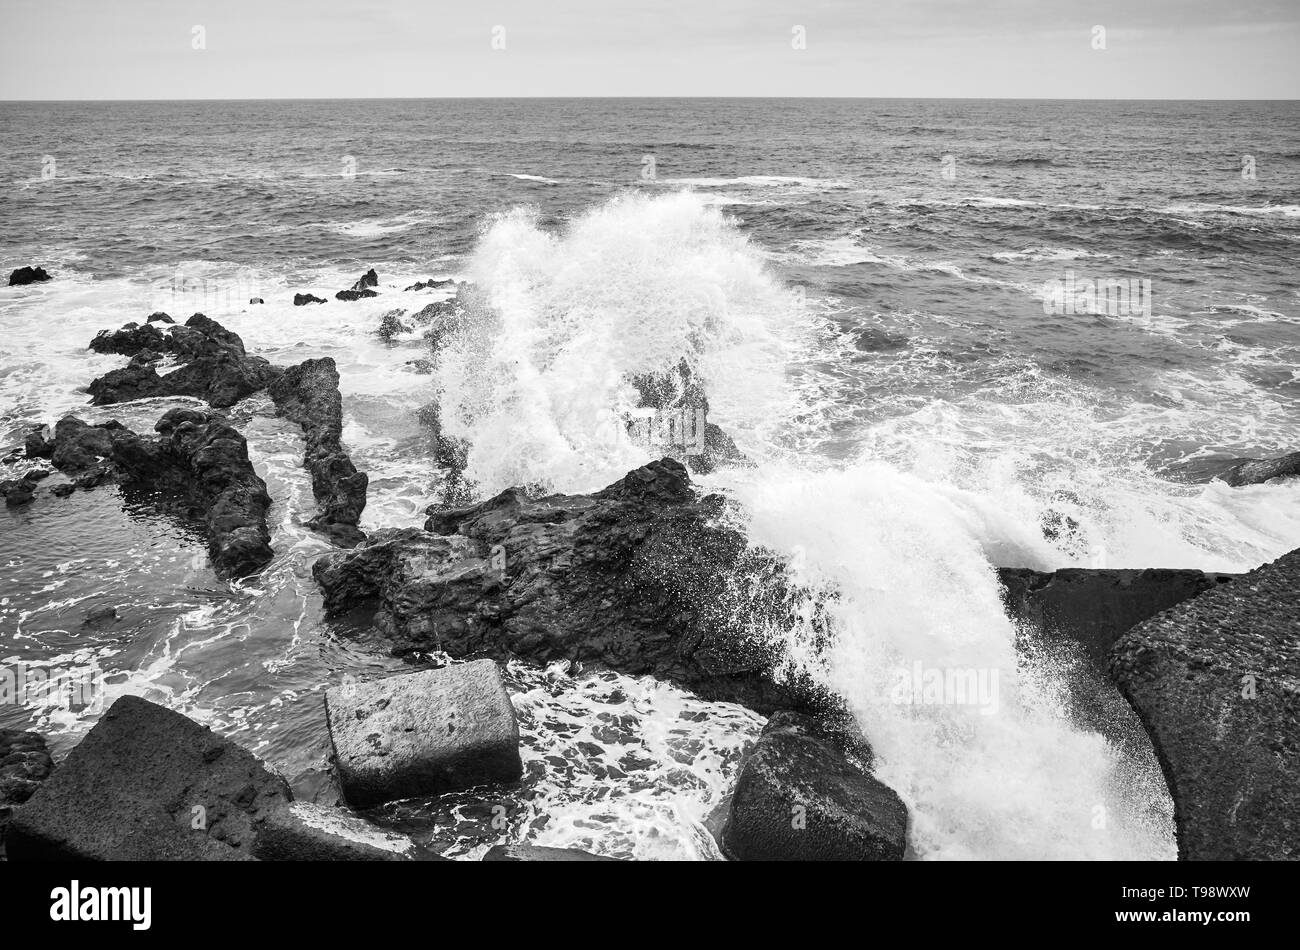 Photo noir et blanc de vagues se brisant sur les rochers, Tenerife, Espagne. Banque D'Images